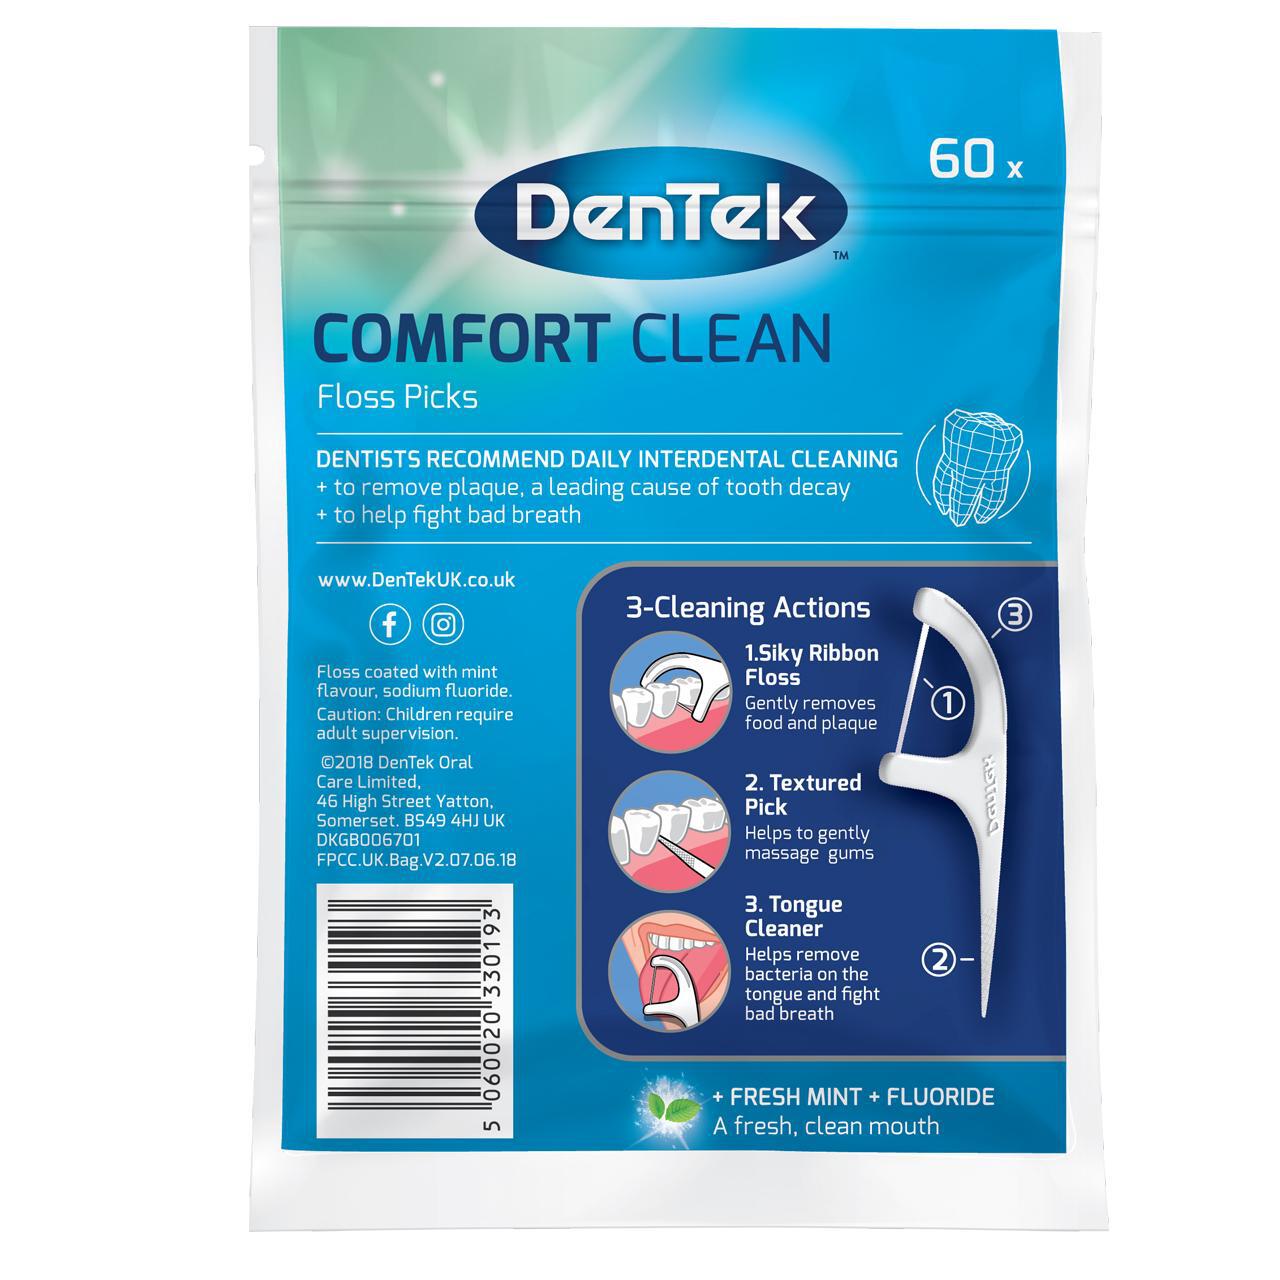 DenTek Comfort Clean Floss Pick 60 per pack